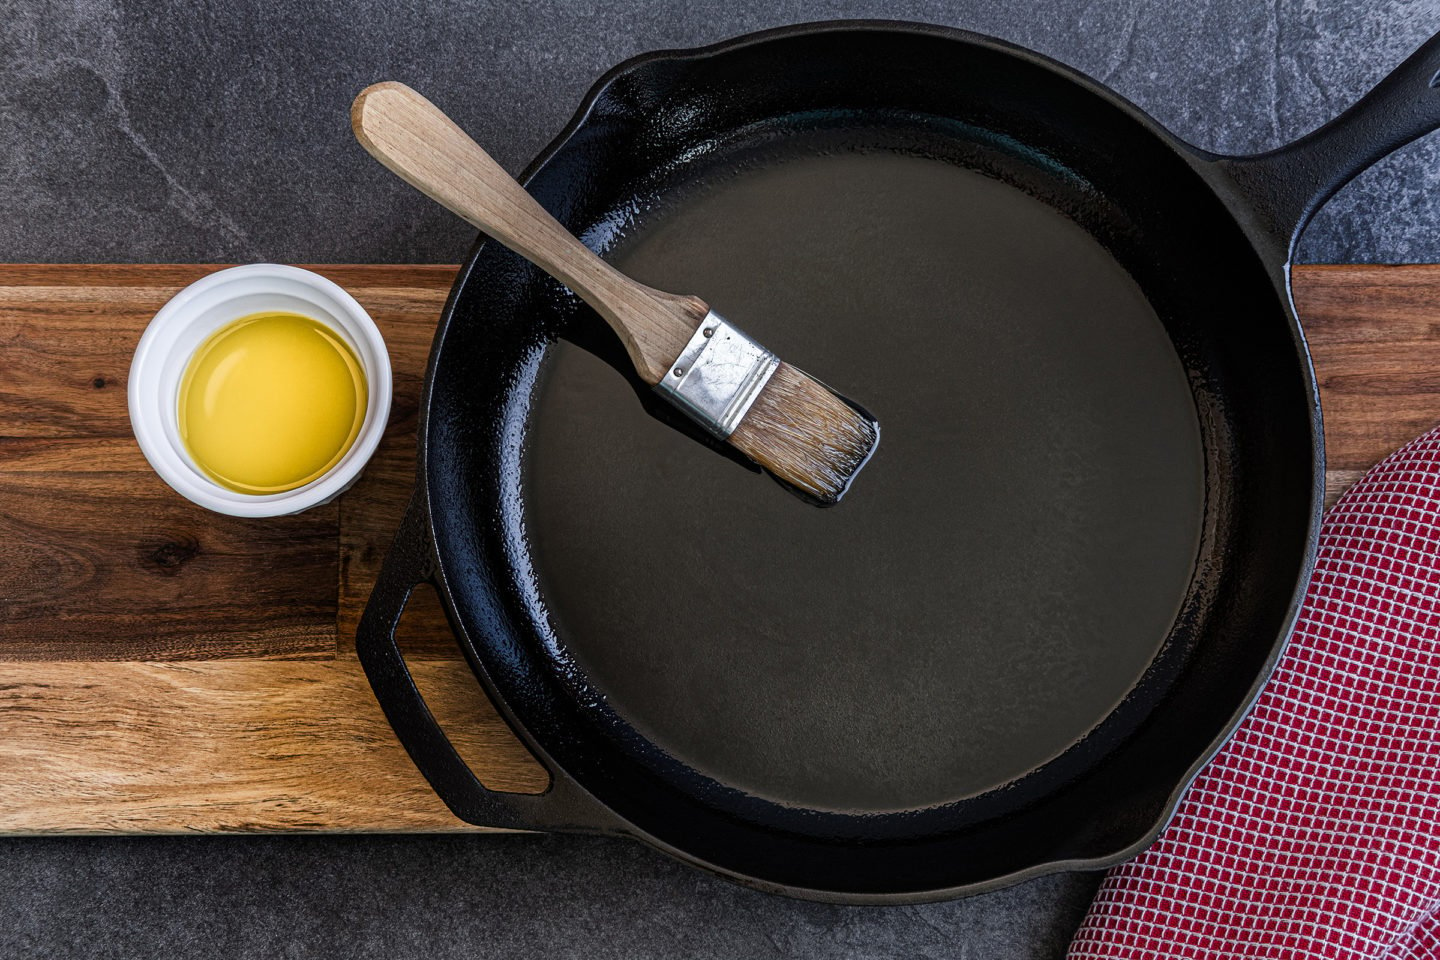 Seasoning Cast Iron Pan With Avocado Oil